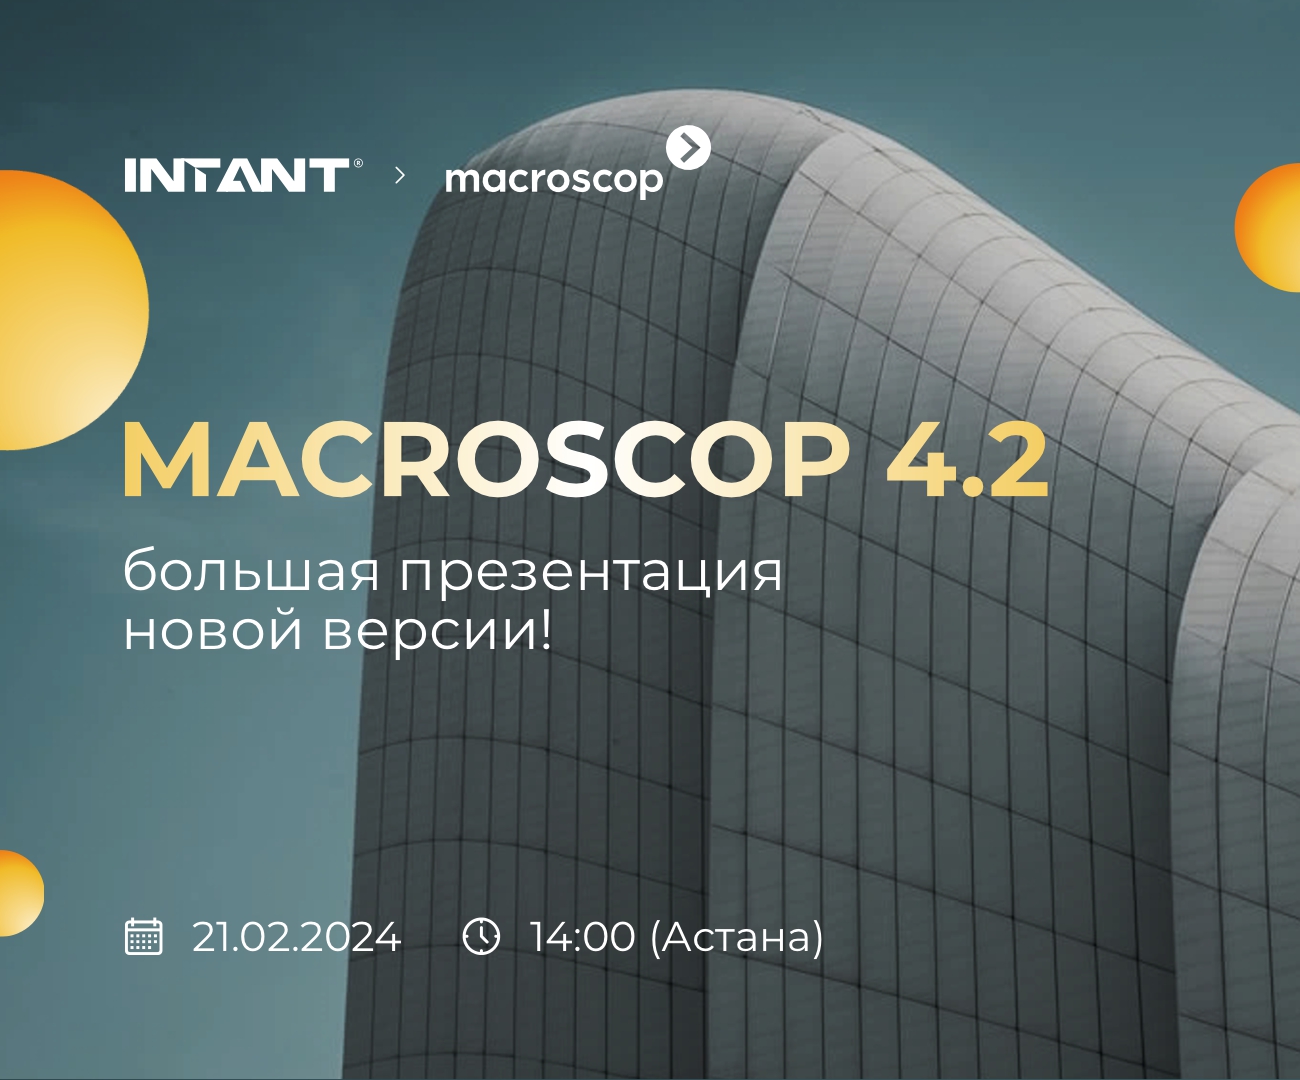 21 февраля состоится большая онлайн-презентация новой версии Macroscop 4.2. <